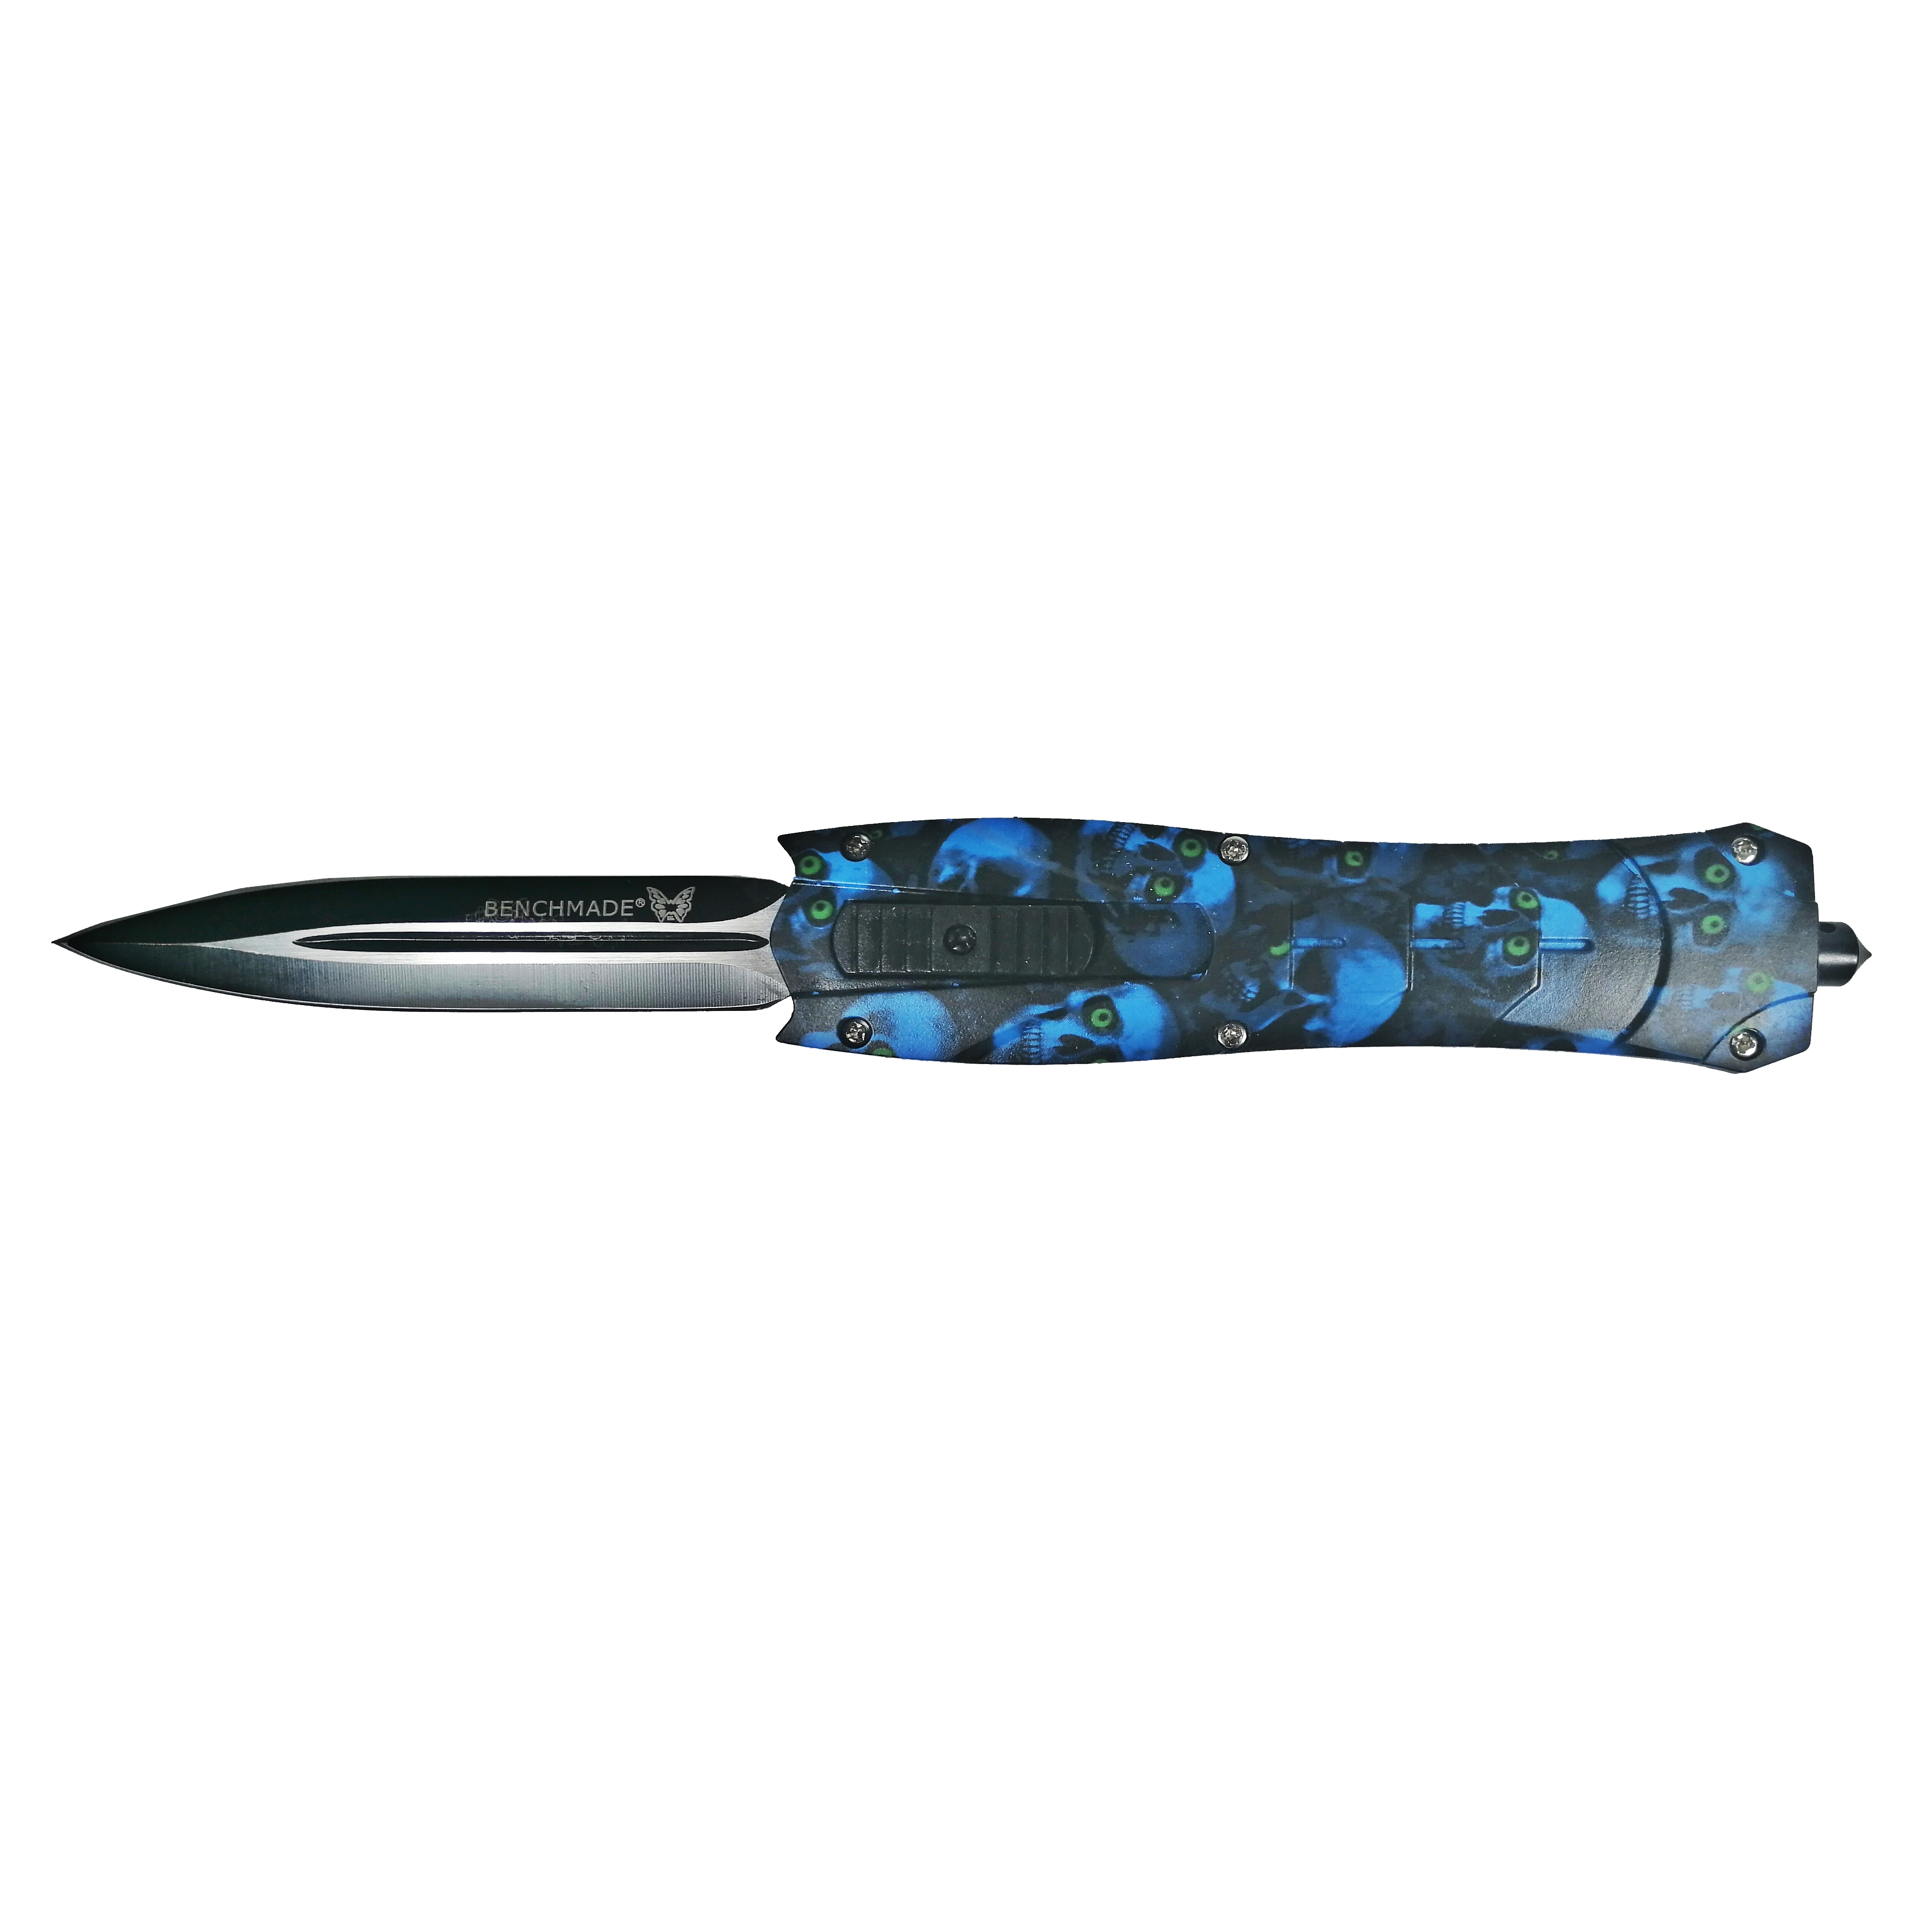 Briceag automat de vanatoare IdeallStore®, Futuristic Blade, PVC, 23 cm, albastru